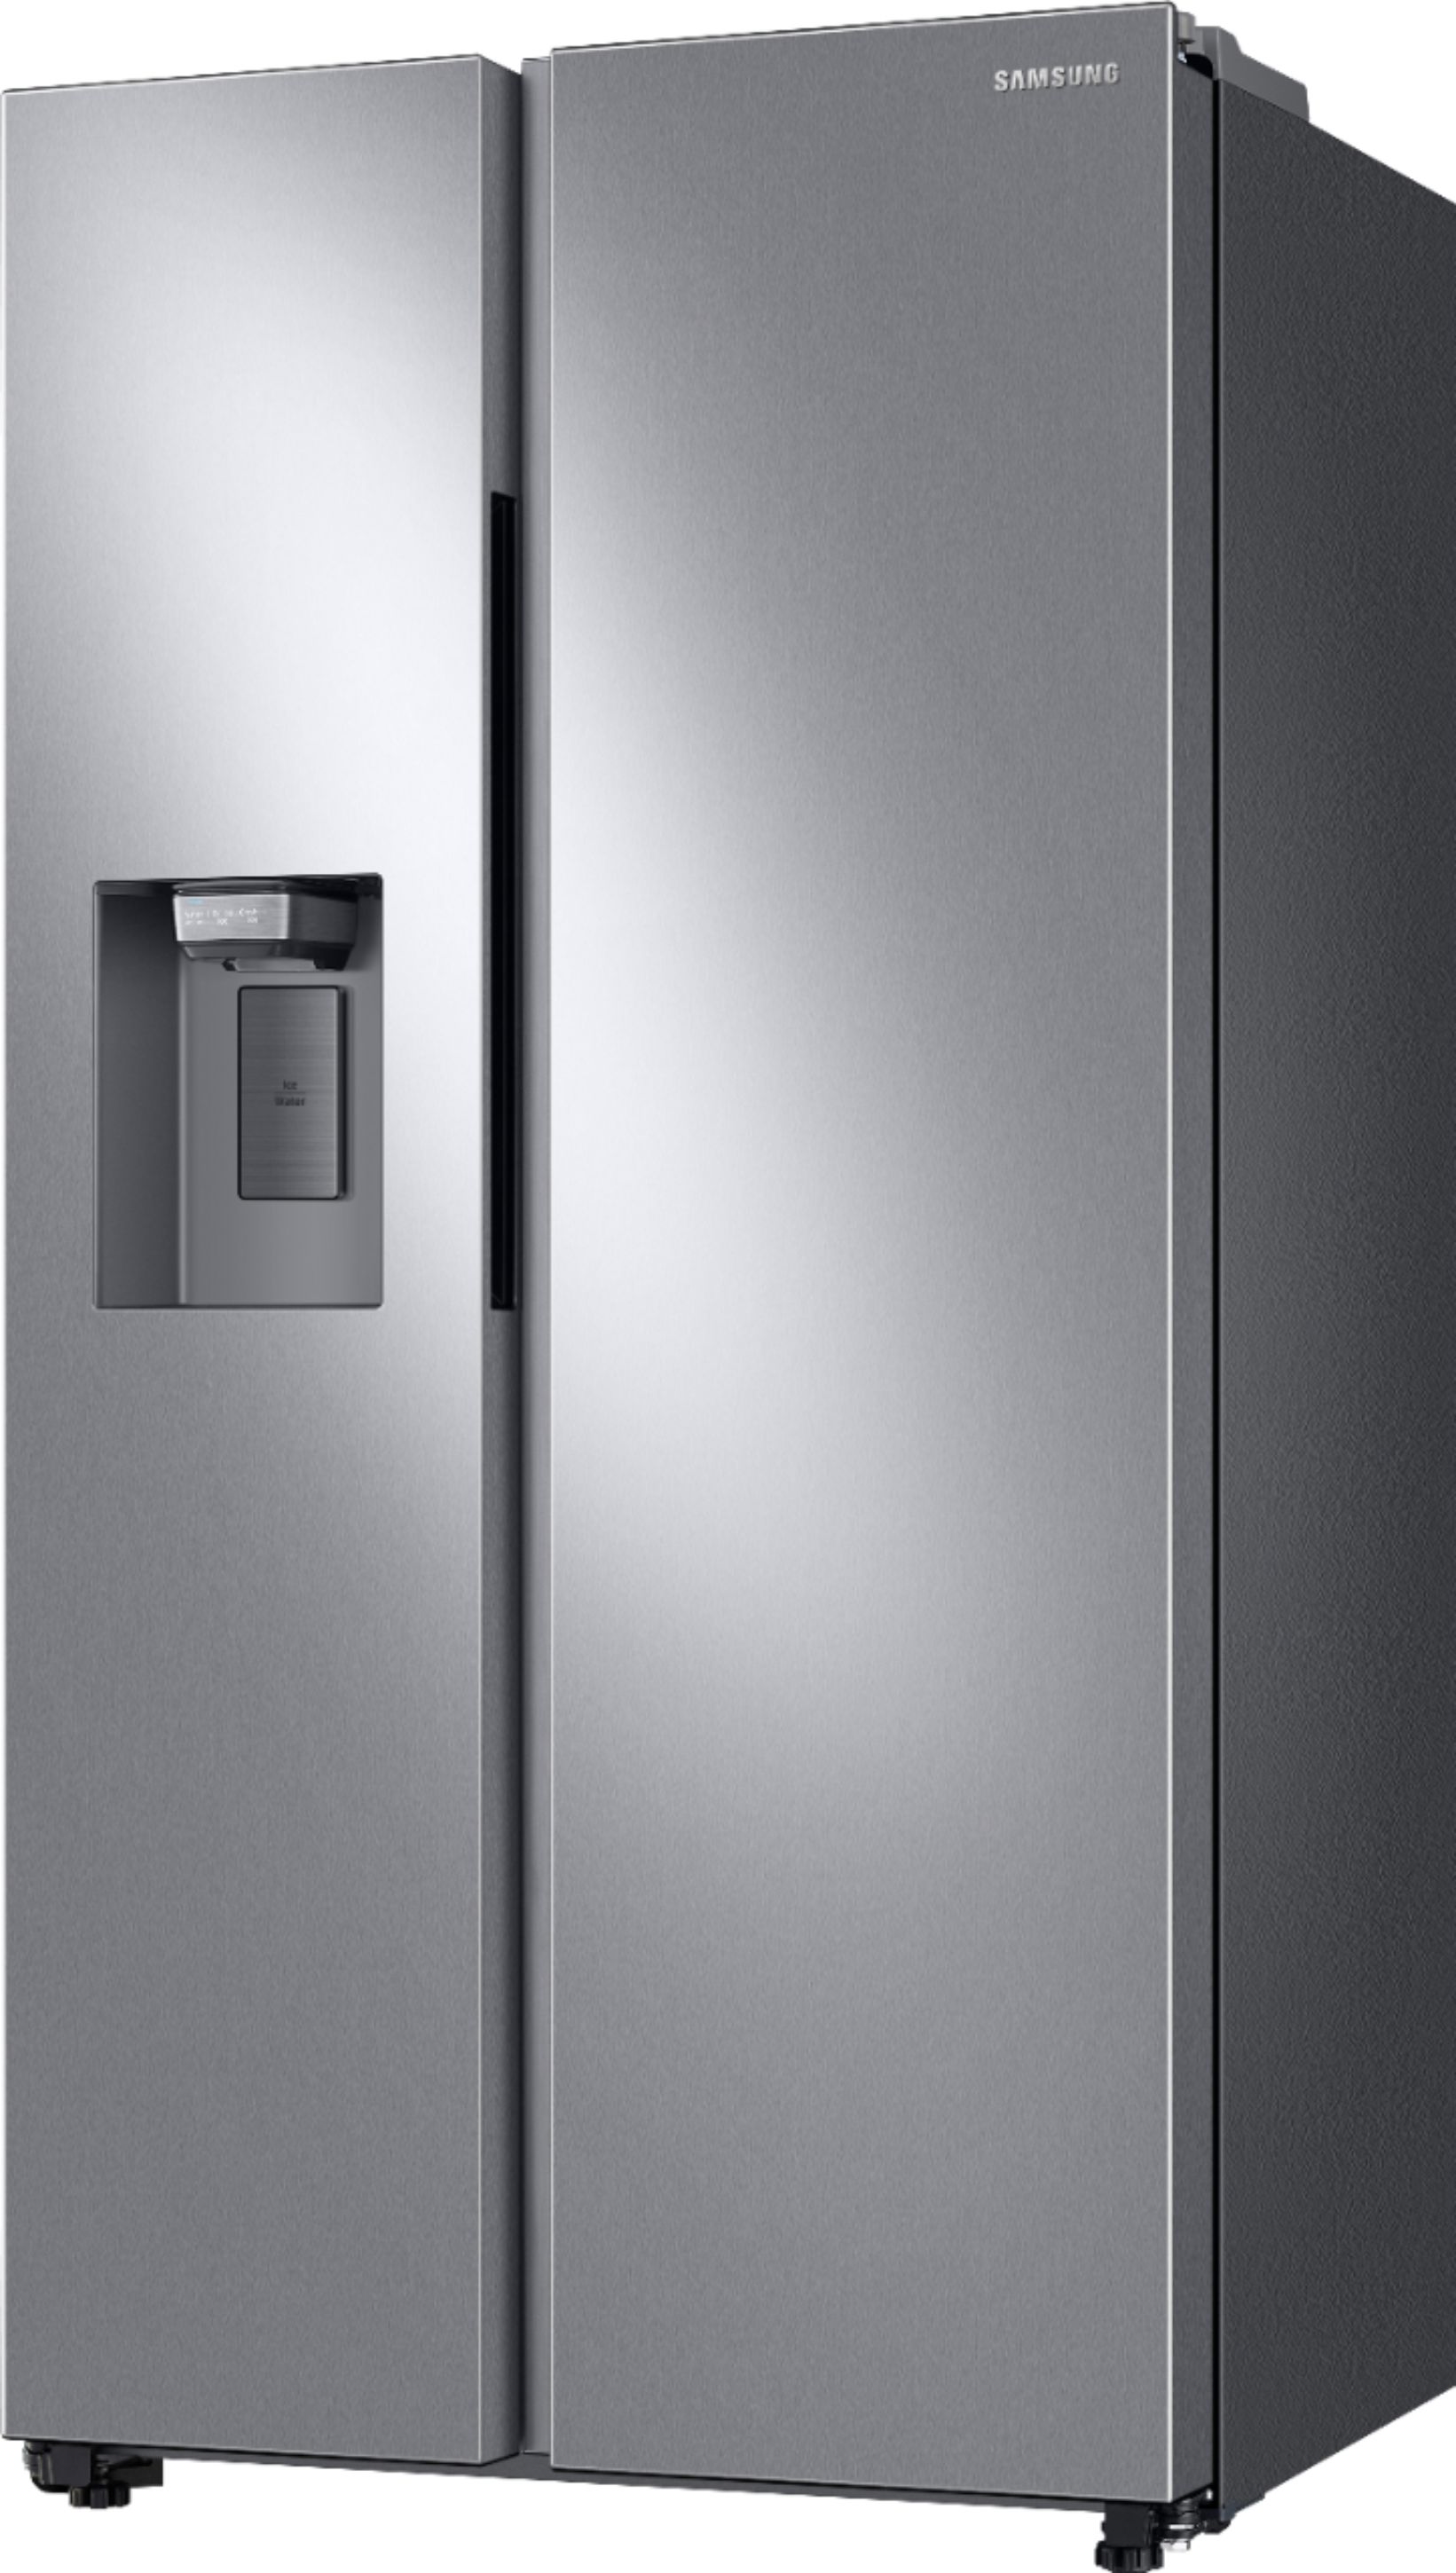 Left View: Samsung - 28 cu. ft. Large Capacity 3-Door French Door Refrigerator - White